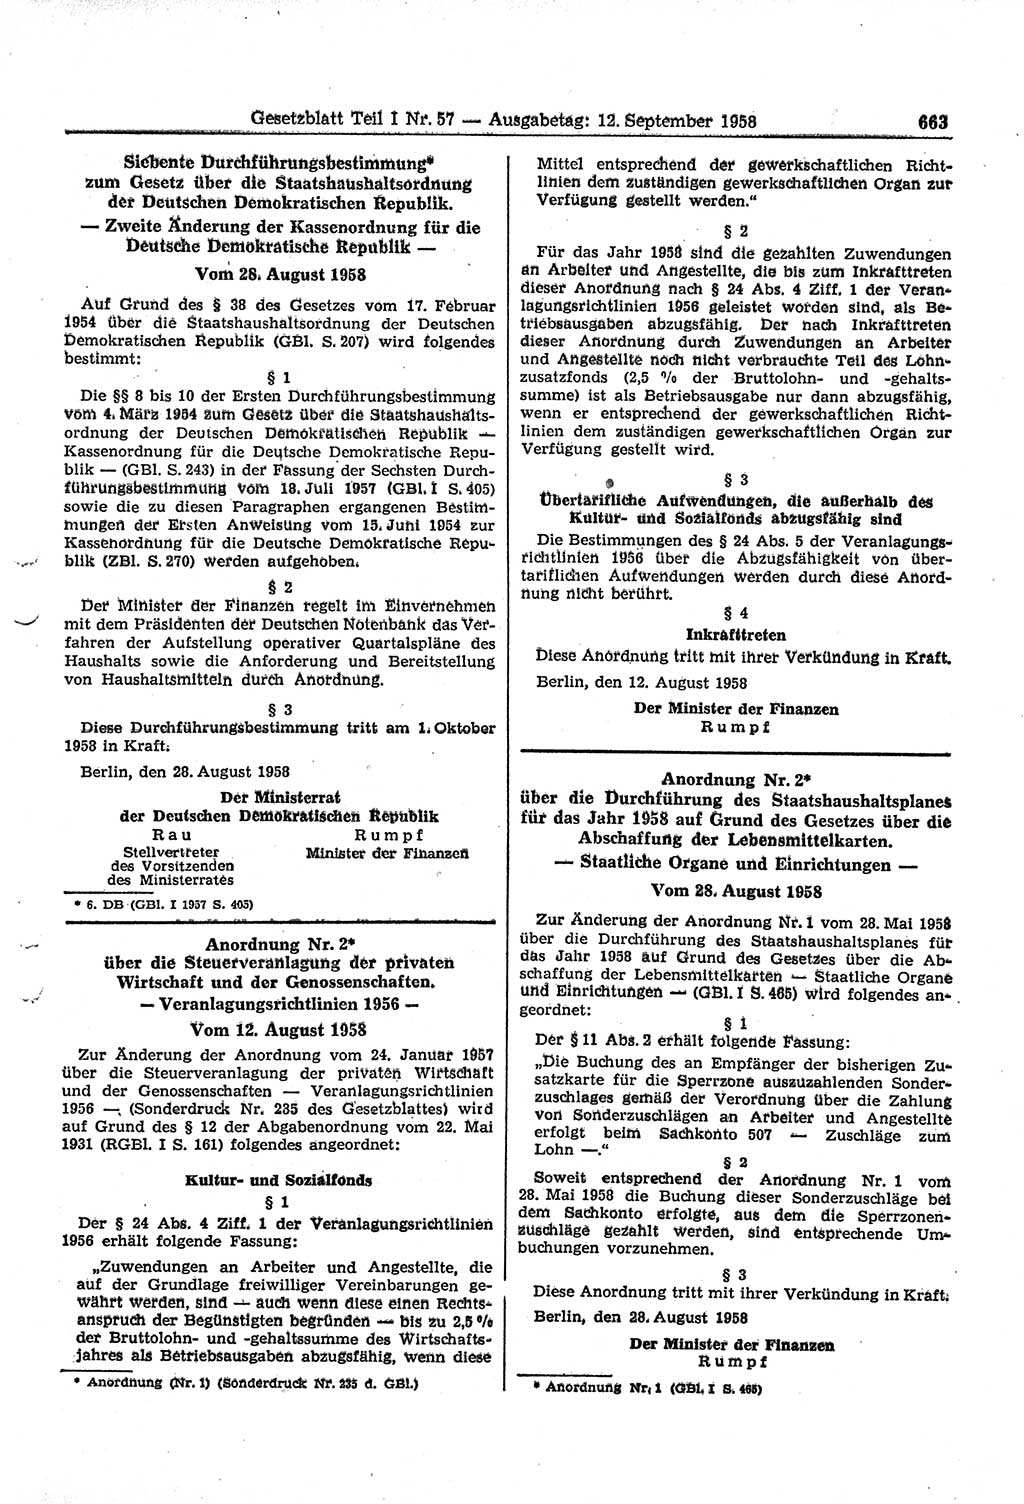 Gesetzblatt (GBl.) der Deutschen Demokratischen Republik (DDR) Teil Ⅰ 1958, Seite 663 (GBl. DDR Ⅰ 1958, S. 663)